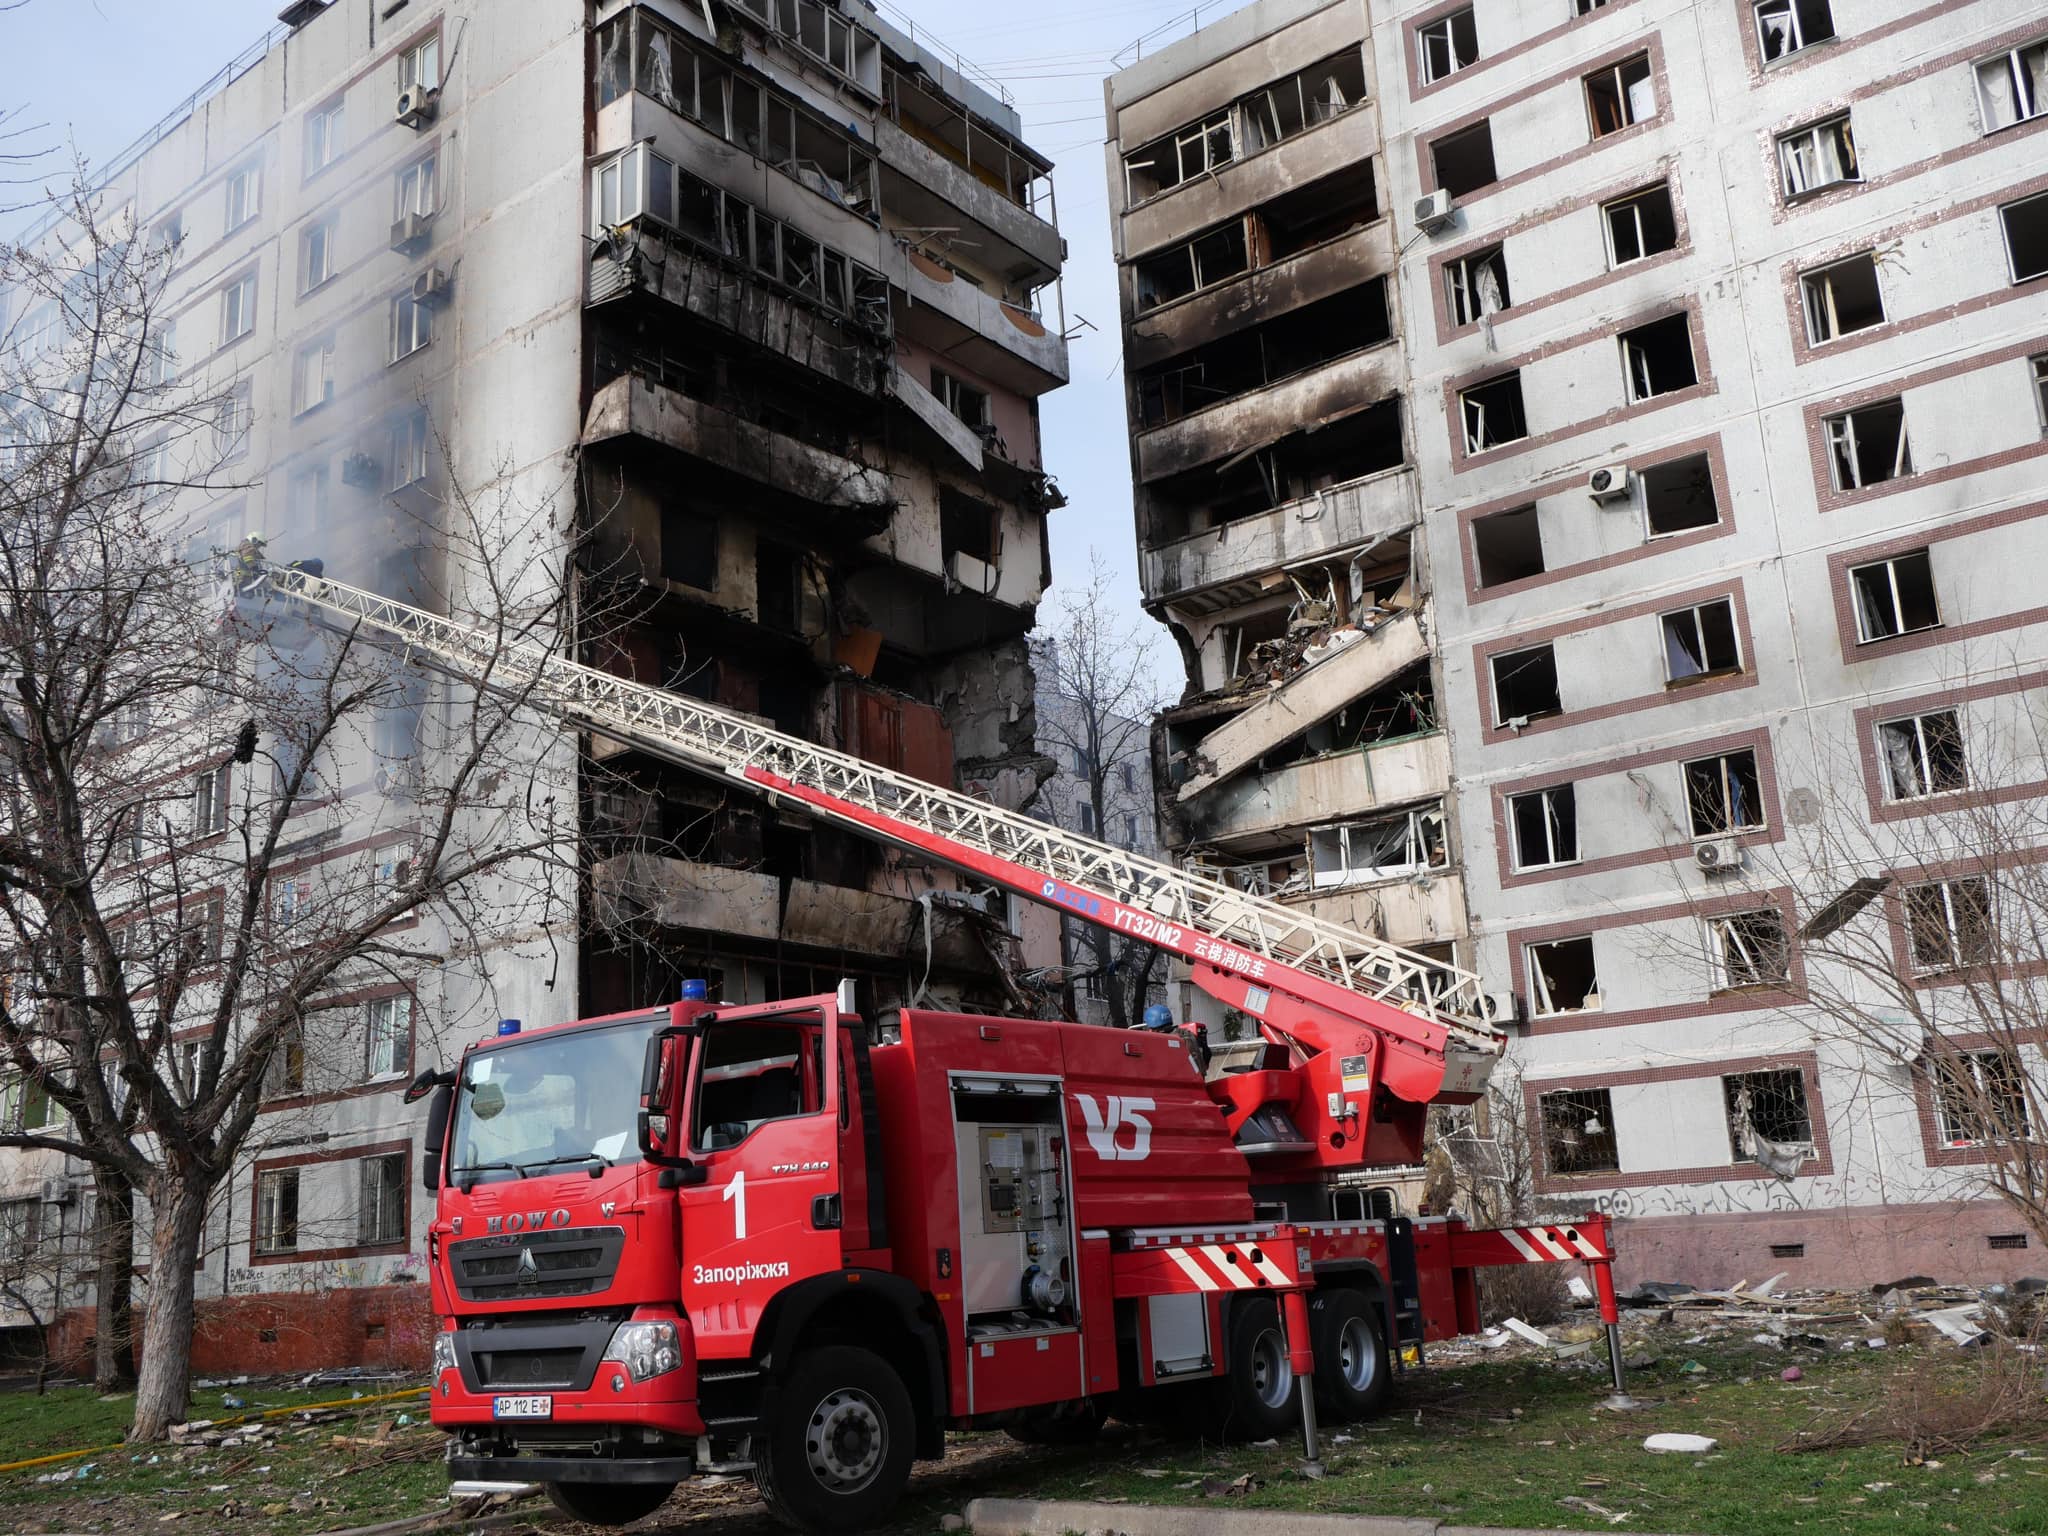 Рятувальна операція в Запоріжжі завершена: від російської атаки загалом 34 людини постраждали, з них троє дітей, одна людина померла (ФОТО) 11